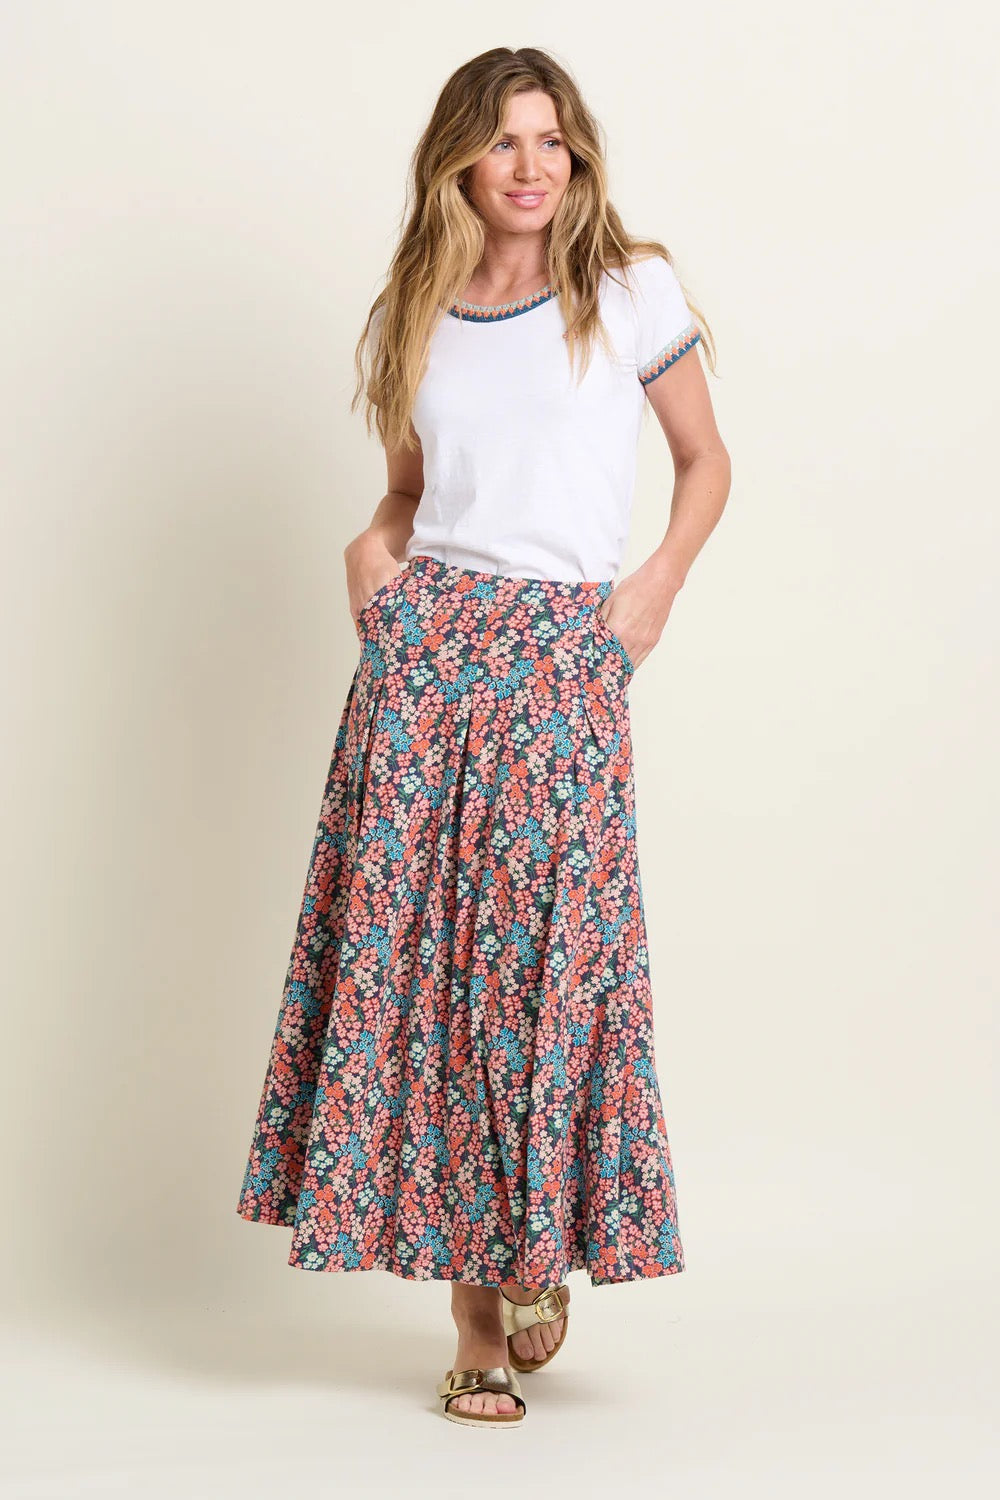 Brakeburn Women's Millie Floral Skirt - Multi